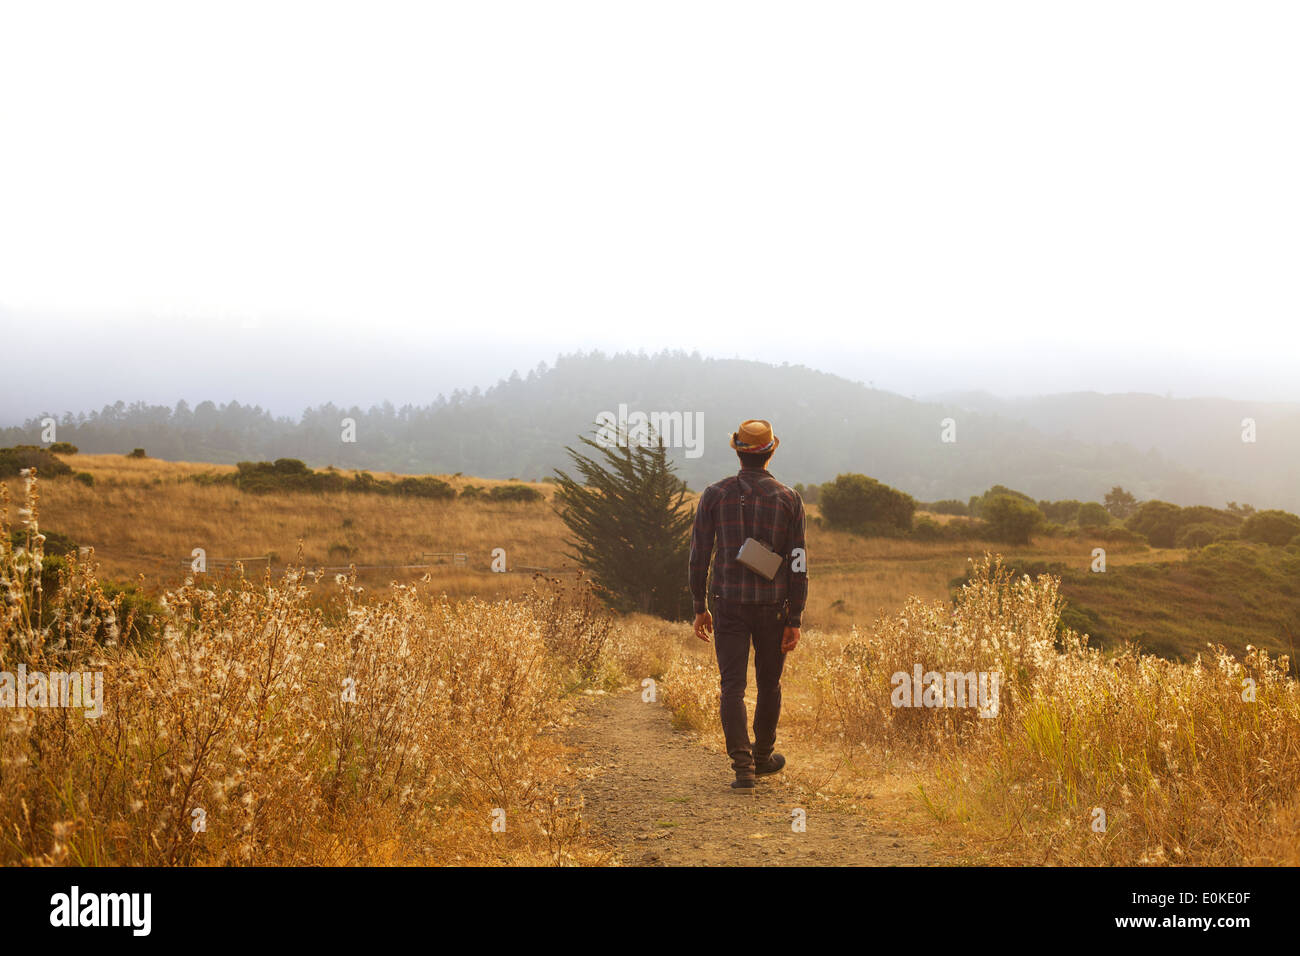 Un homme avec un chapeau de paille et une terre marche le long de la caméra d'un chemin dans un champ d'herbe d'or à sec. Banque D'Images